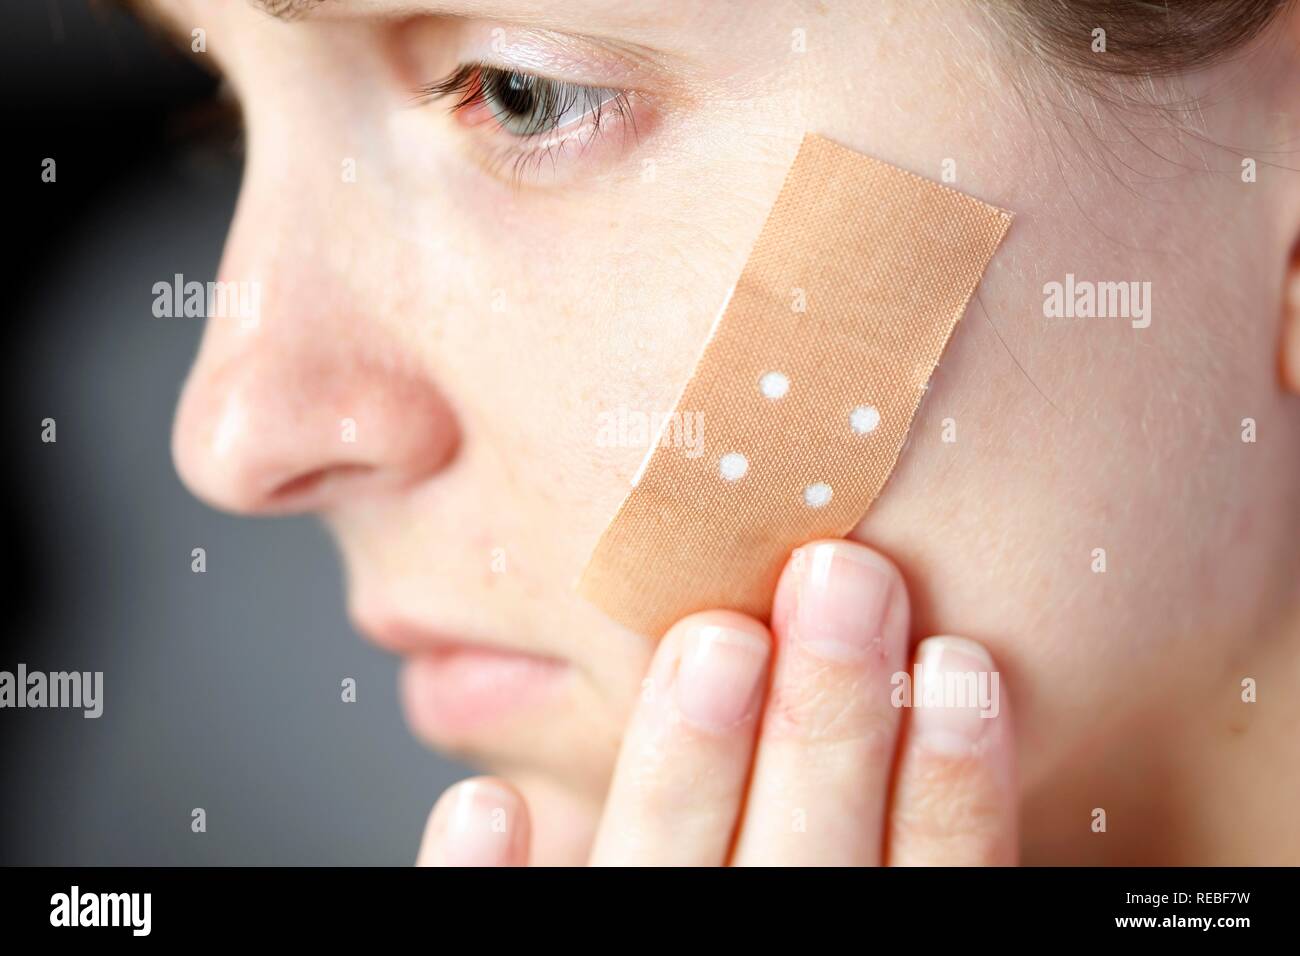 Femme avec un pansement adhésif sur son visage Photo Stock - Alamy